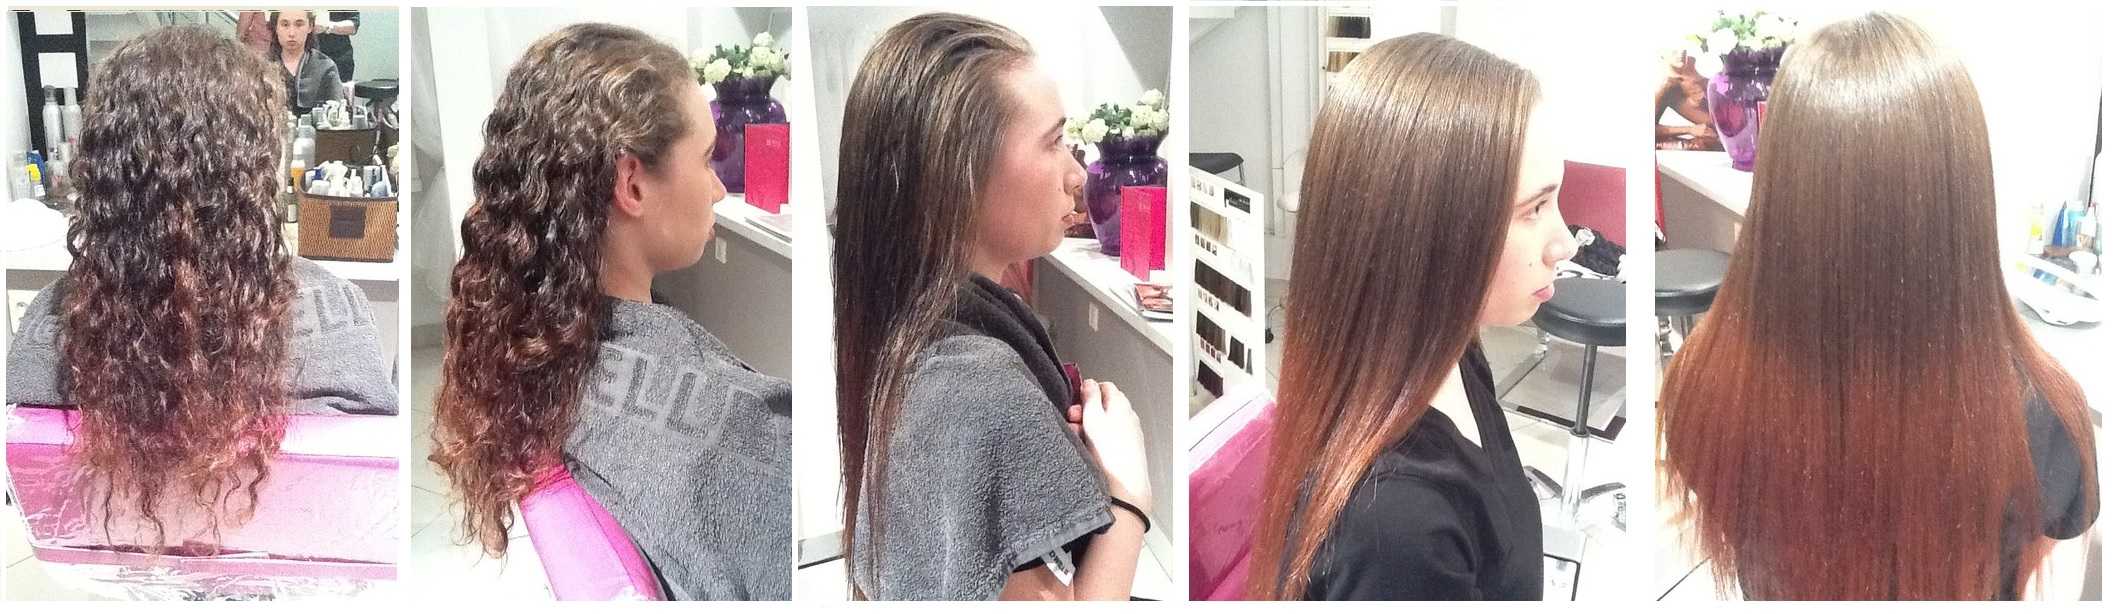 Как сделать волосы прямыми надолго с помощью перманентное выпрямления. выпрямления на примере средства goldwell. плюсы и минусы, противопоказания. фото до и после.